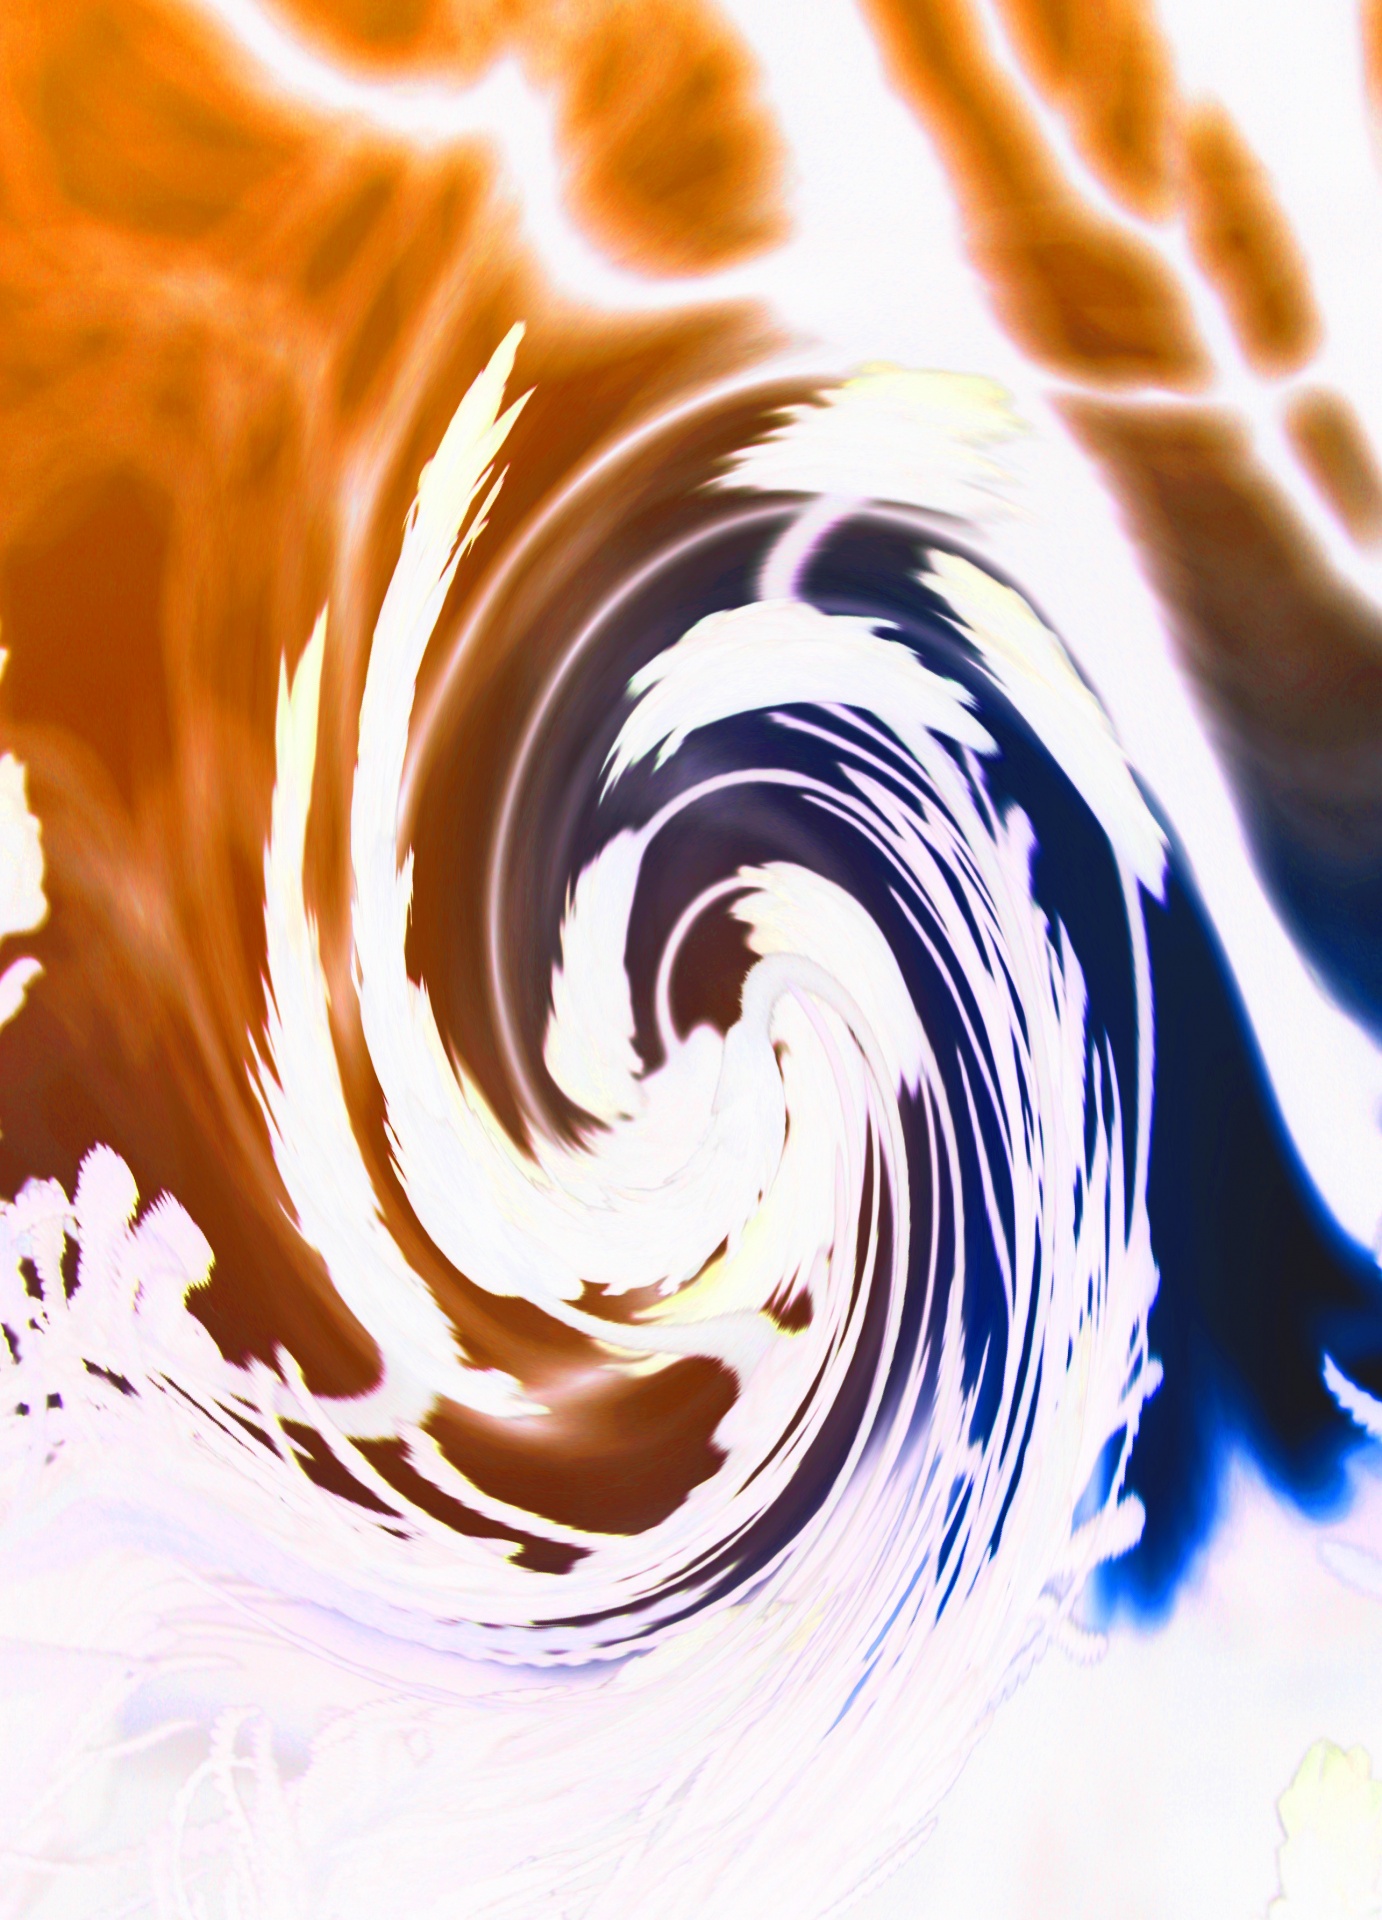 twist twirl spiral free photo